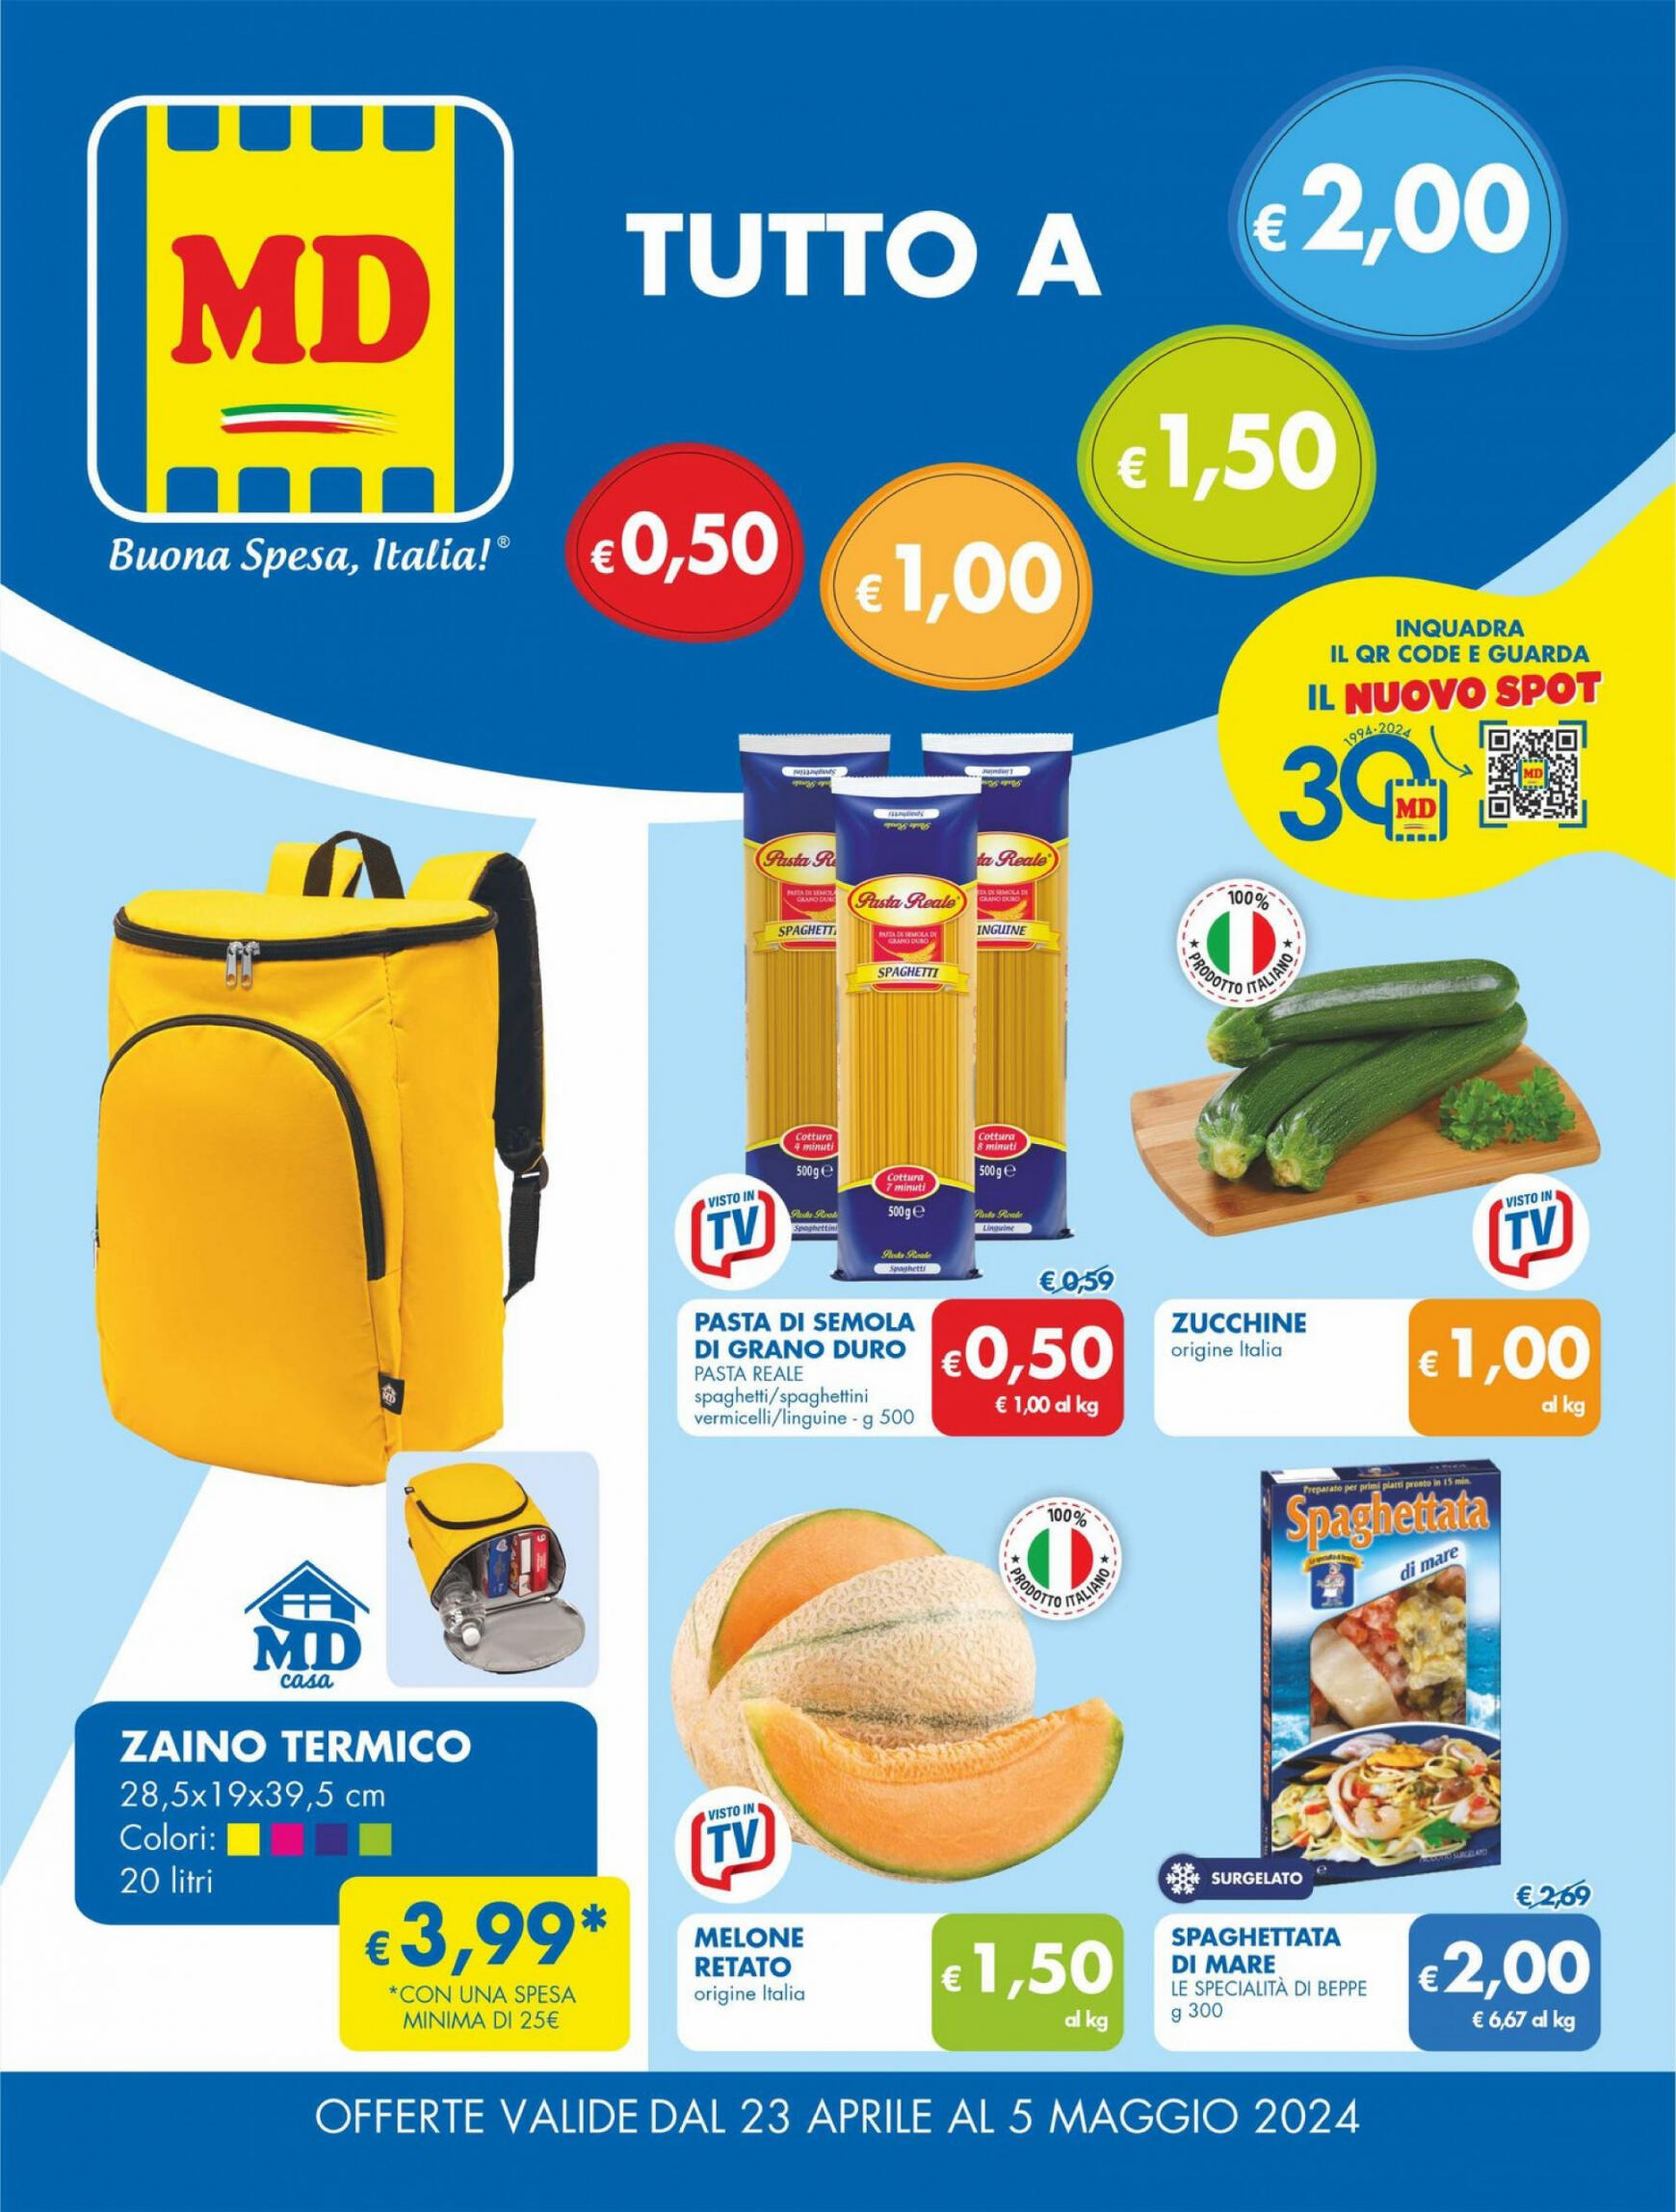 md-discount - Nuovo volantino MD 23.04. - 05.05.